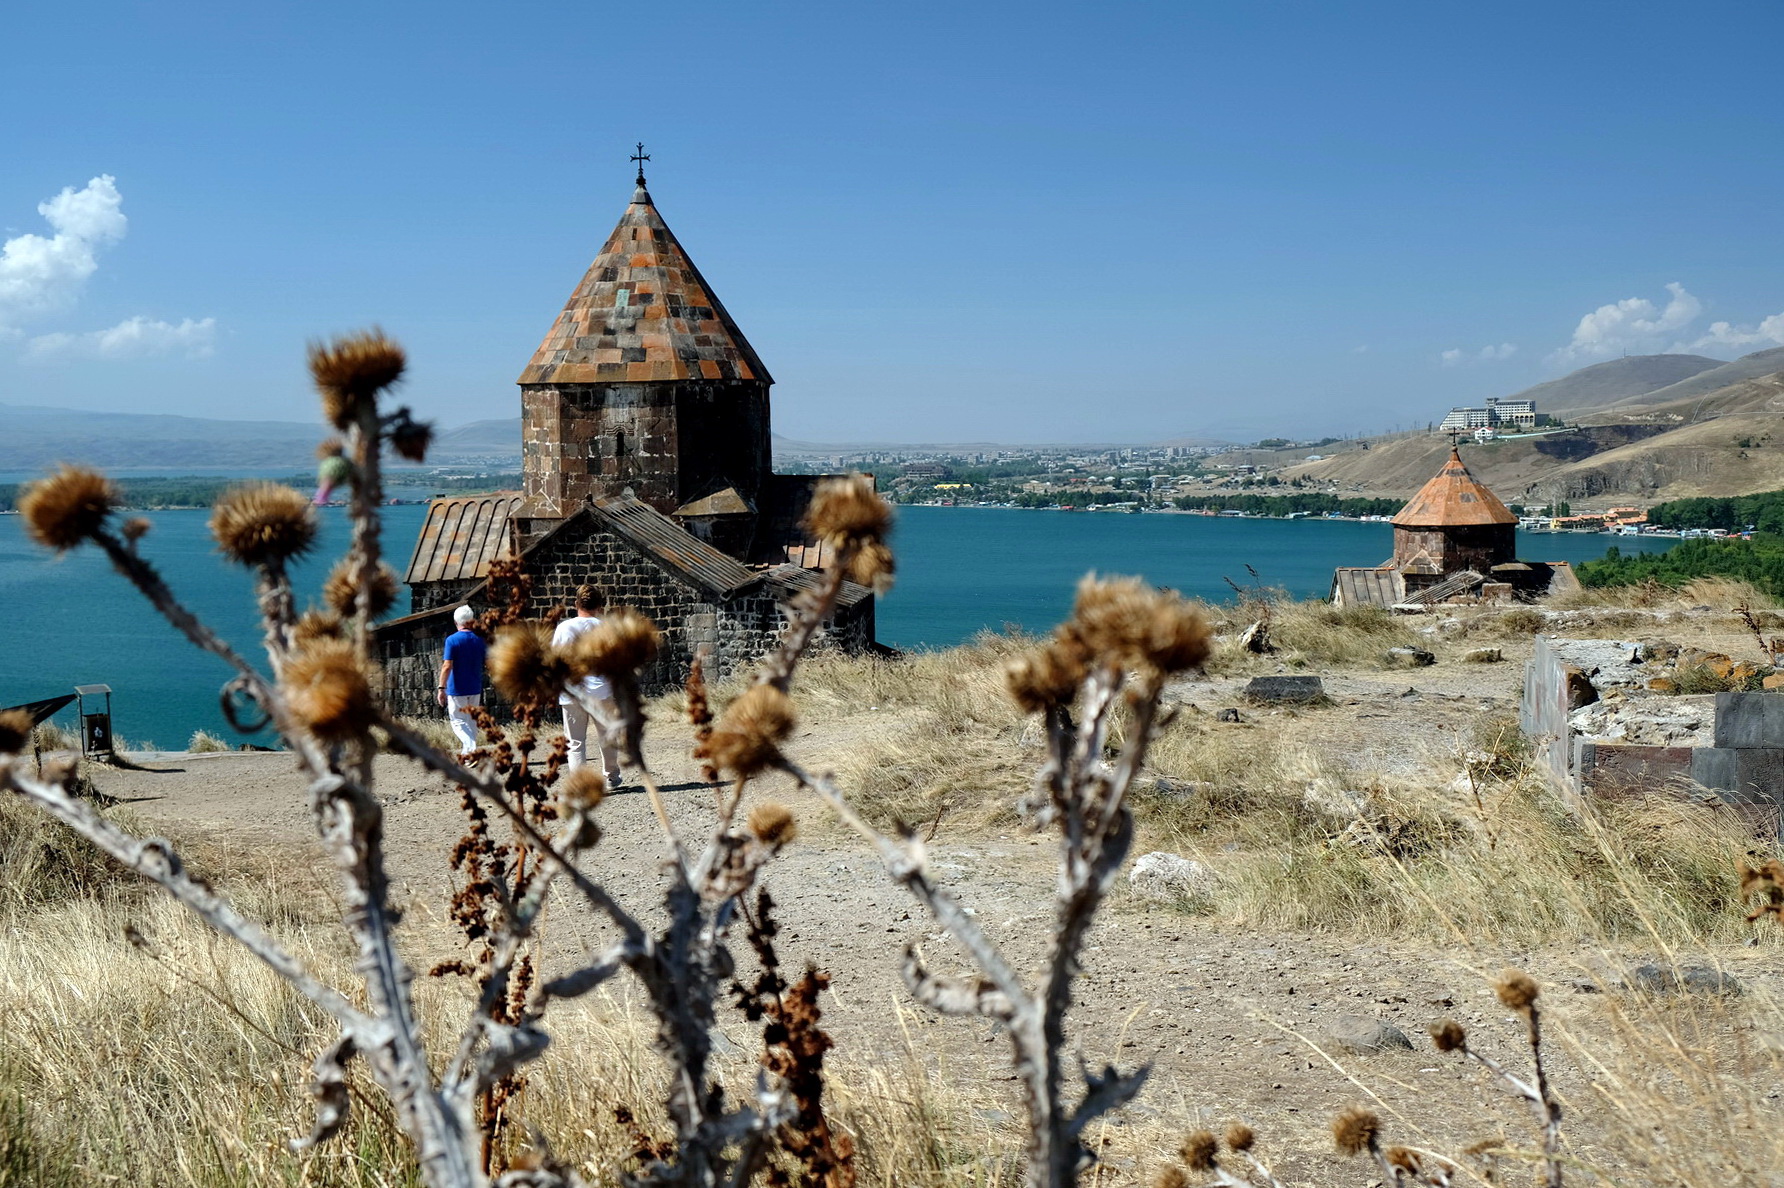 Красоты древней Армении (7 дней)